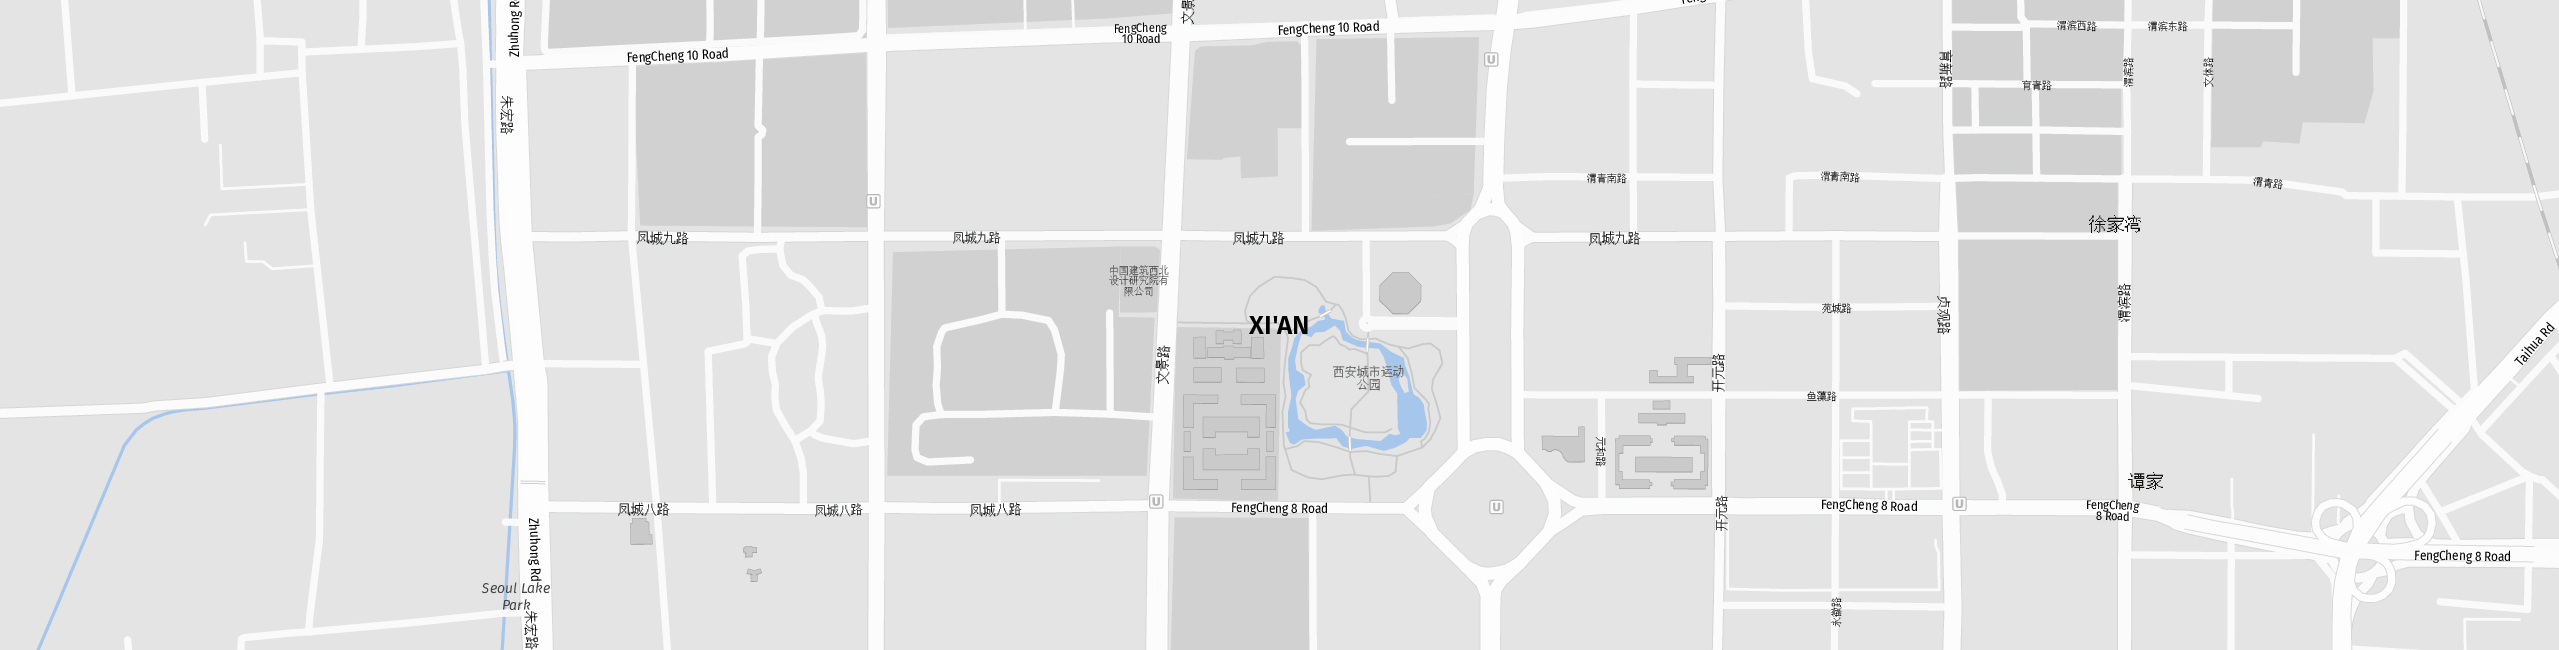 Stadtplan Xi'an zum Downloaden.